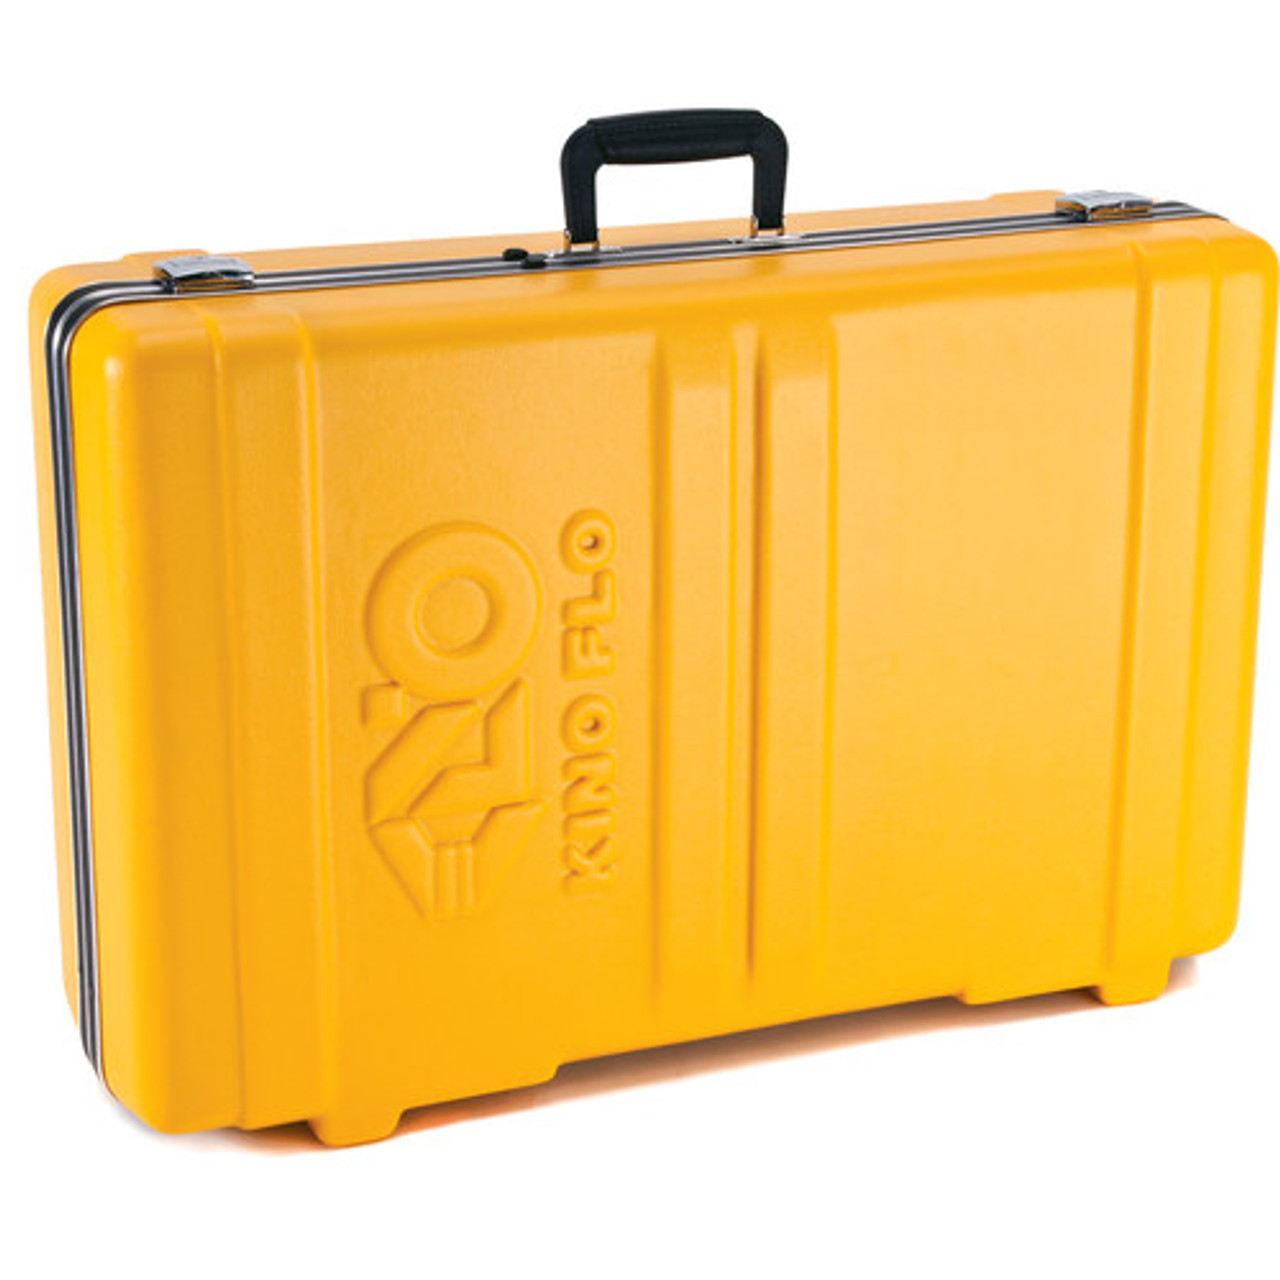 Kino Flo Travel Case for FreeStyle T24 (Yellow) (KAS-FT24C)